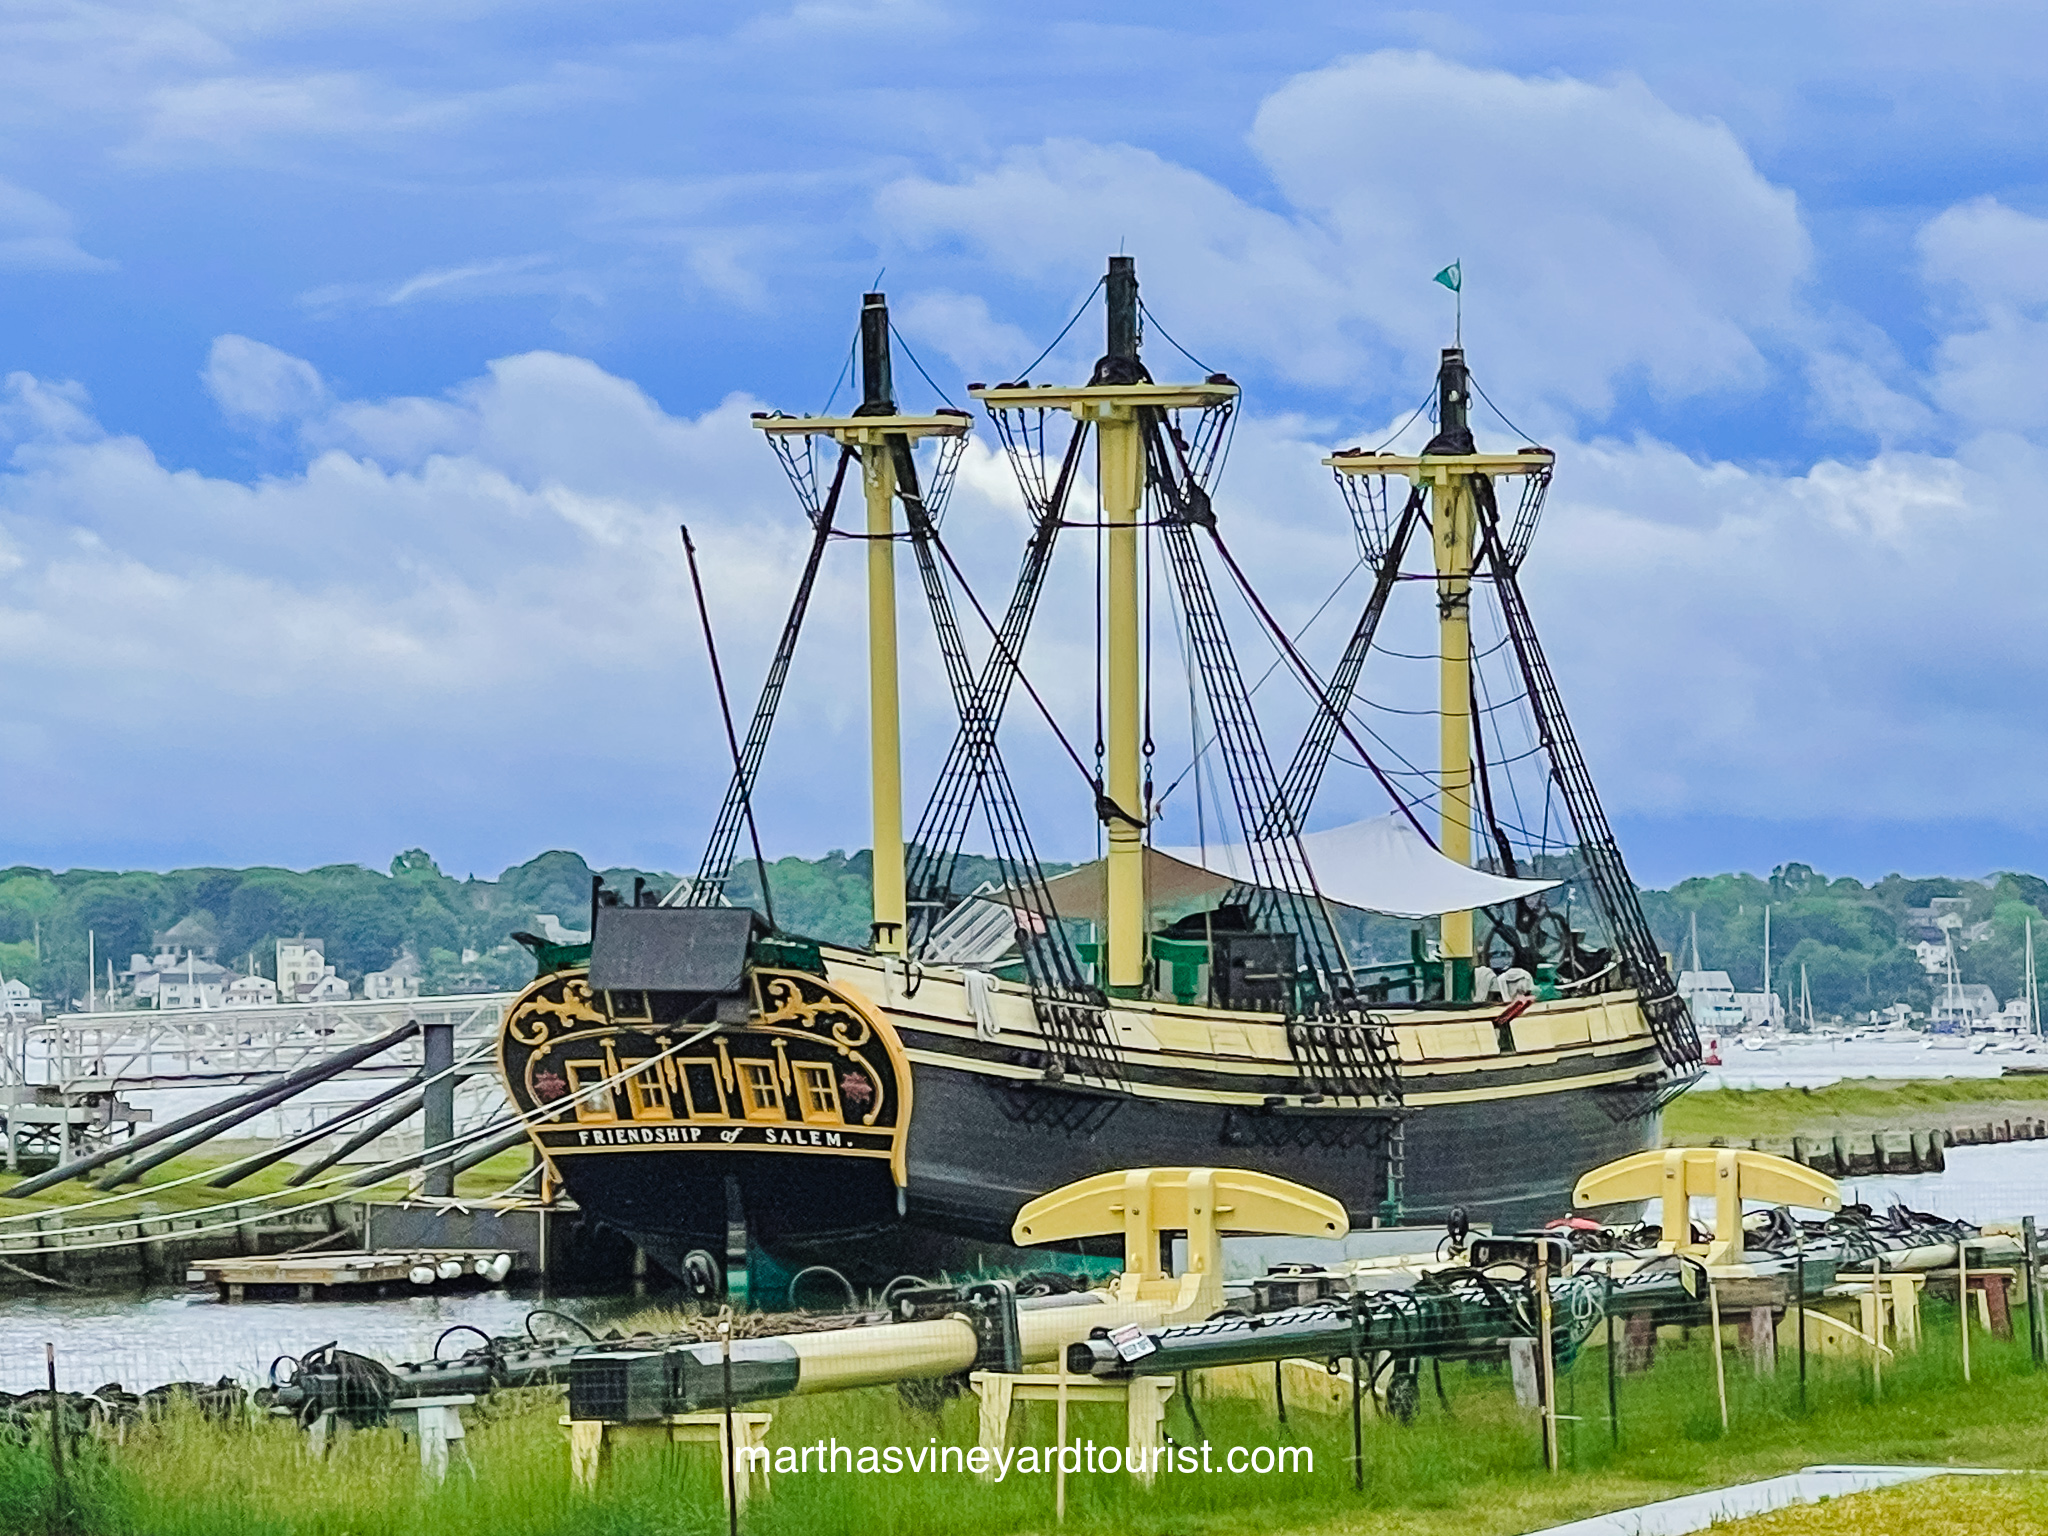 The Friendship of Salem old schooner docked in Salem Massachusetts